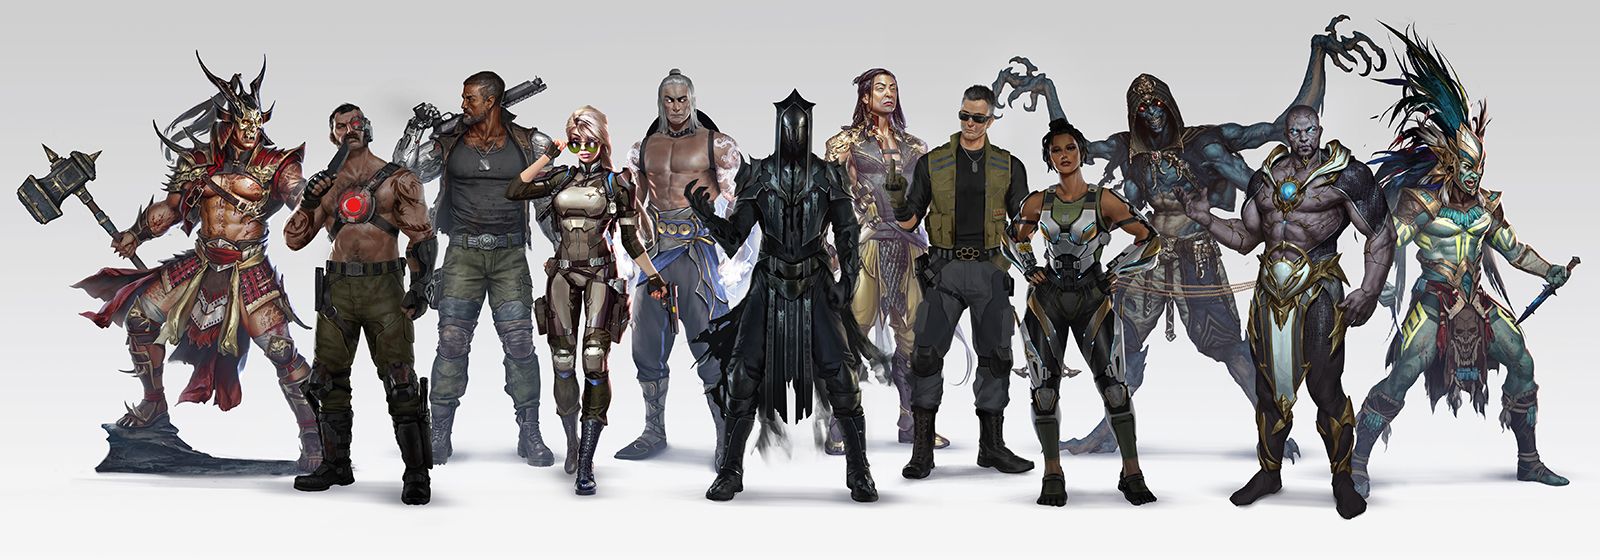 Personatges de Mortal Kombat 11 cortesia de Netherrealm Studios